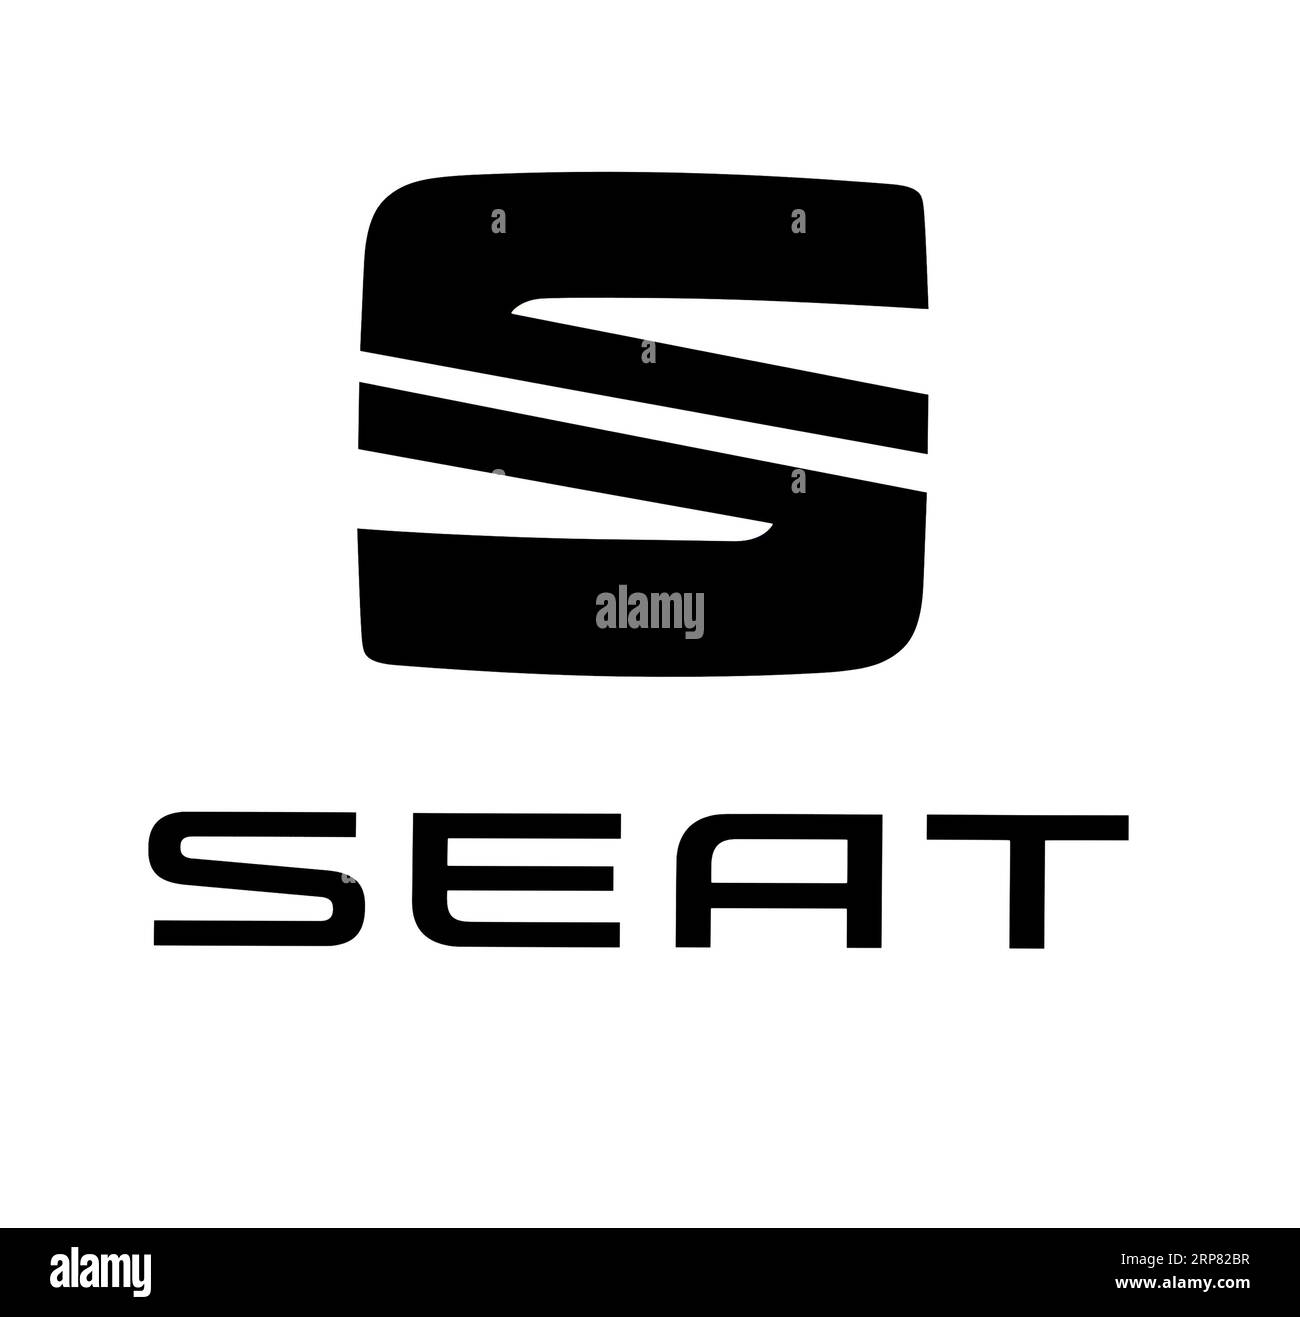 Logo del marchio dell'auto Seat, car, Motor Vehicle, ritaglio su sfondo bianco Foto Stock